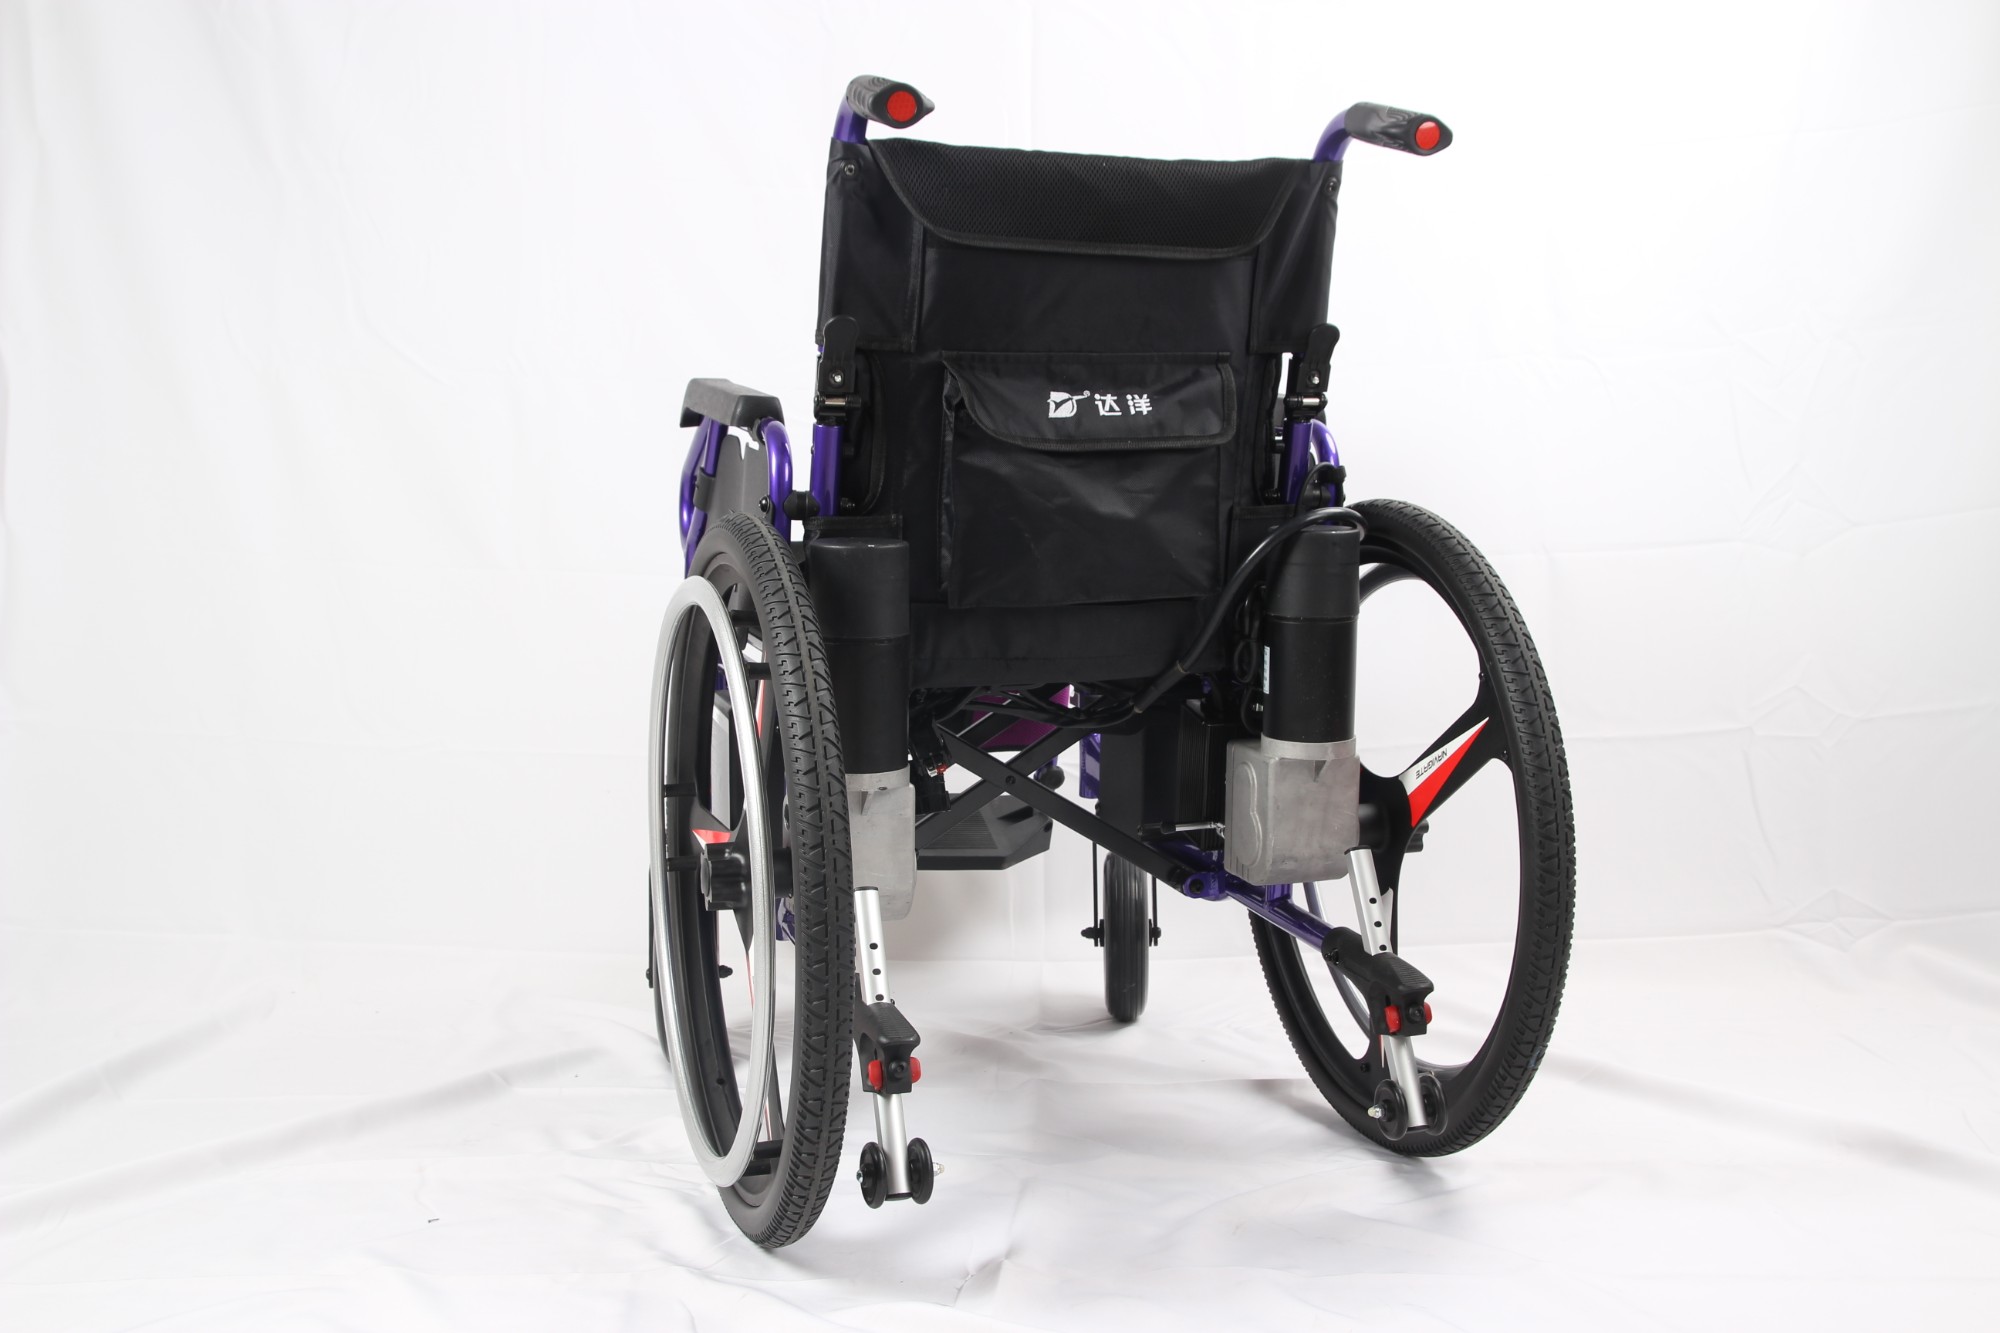 Katlanabilir Yeni Varış Çift Amaçlı Elle Elektrikli Tekerlekli Sandalye satın al,Katlanabilir Yeni Varış Çift Amaçlı Elle Elektrikli Tekerlekli Sandalye Fiyatlar,Katlanabilir Yeni Varış Çift Amaçlı Elle Elektrikli Tekerlekli Sandalye Markalar,Katlanabilir Yeni Varış Çift Amaçlı Elle Elektrikli Tekerlekli Sandalye Üretici,Katlanabilir Yeni Varış Çift Amaçlı Elle Elektrikli Tekerlekli Sandalye Alıntılar,Katlanabilir Yeni Varış Çift Amaçlı Elle Elektrikli Tekerlekli Sandalye Şirket,